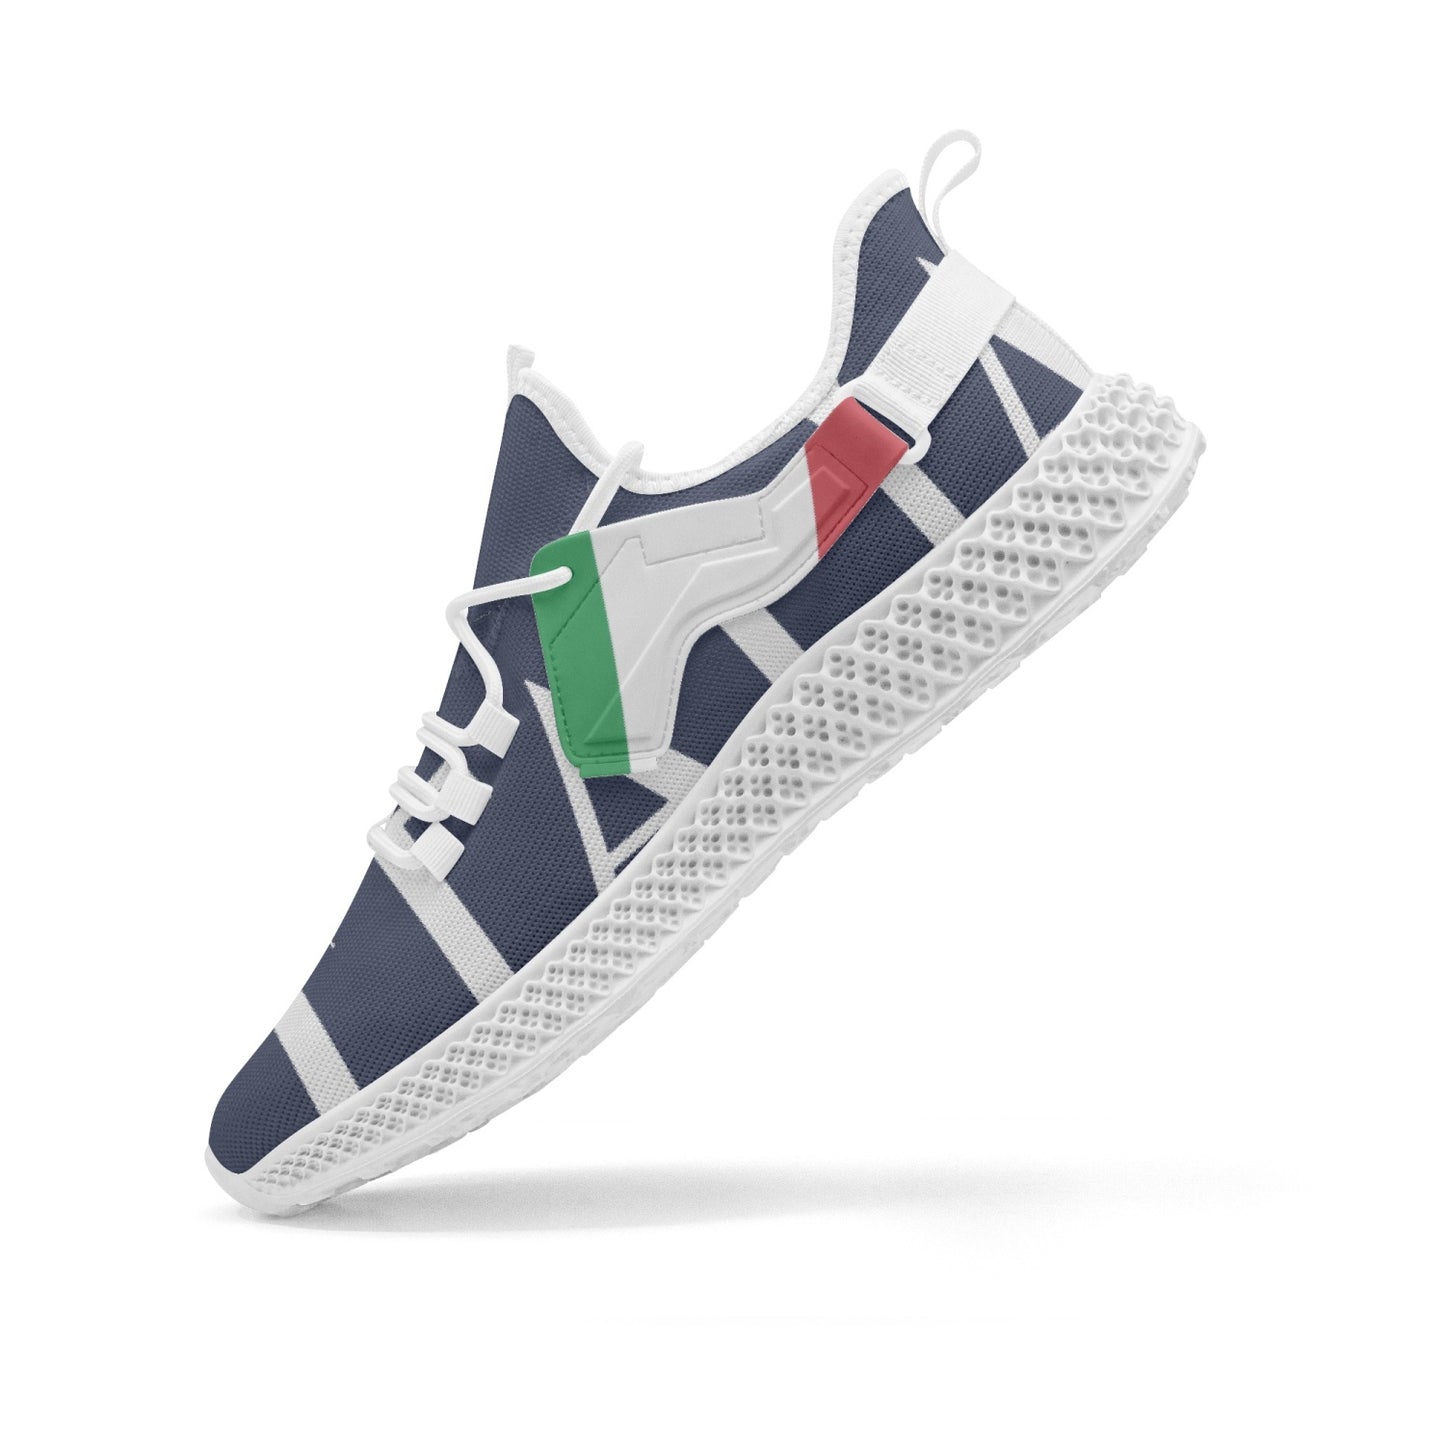 Italia Net Mesh Knit Sneakers Navy - men/women sizes